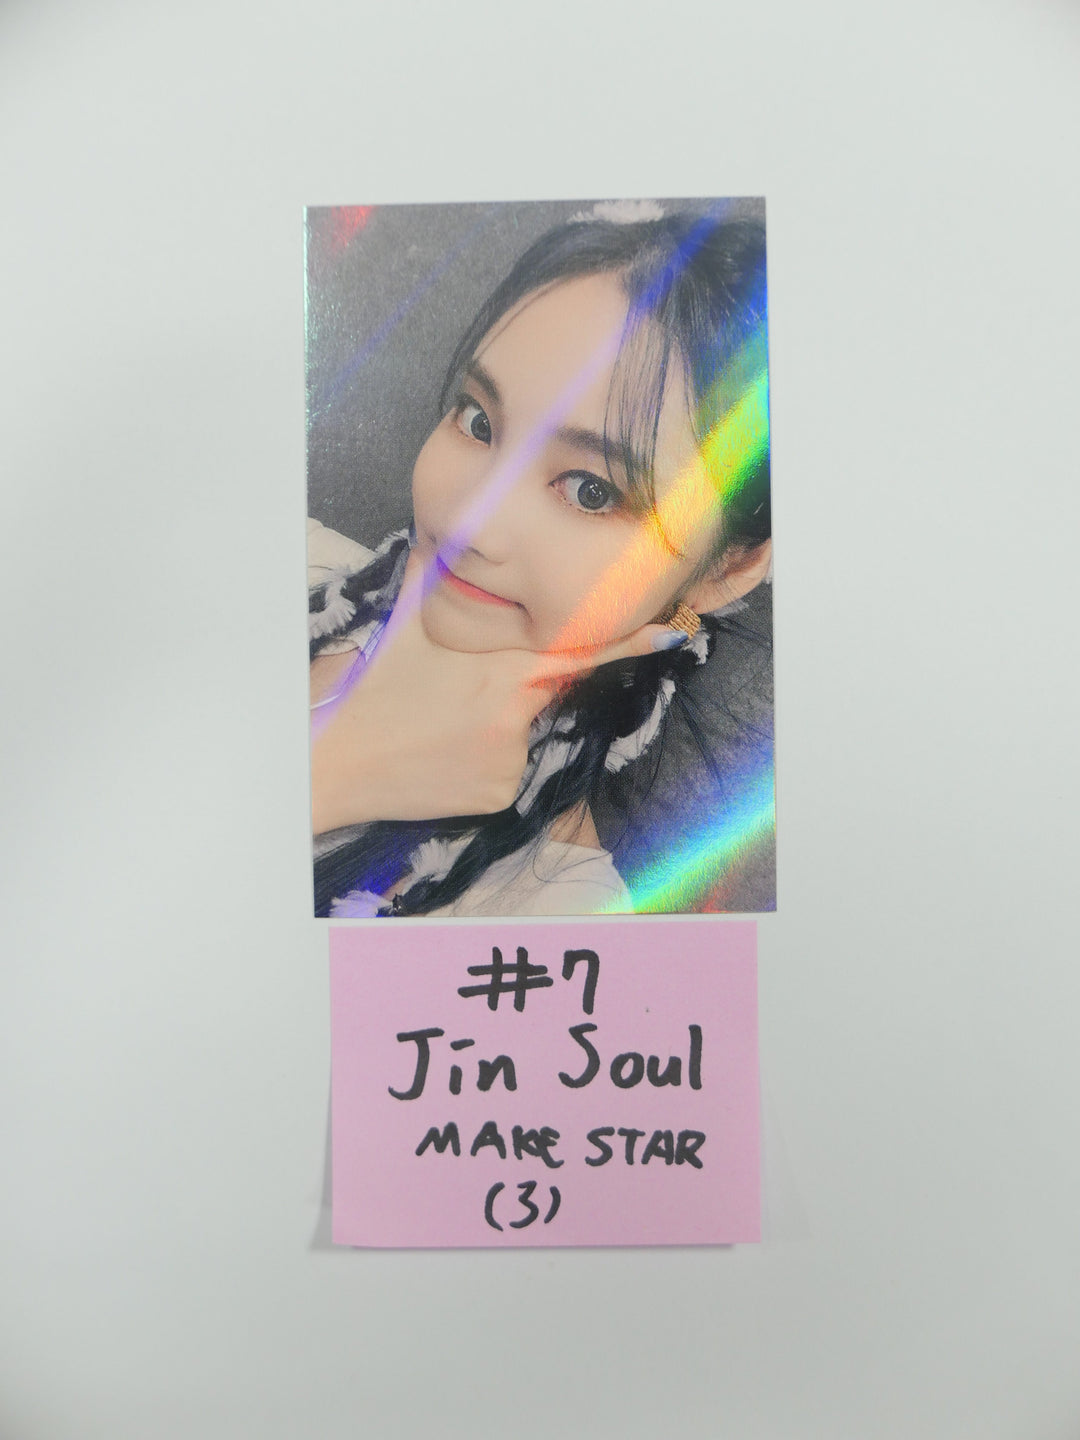 이달의 소녀 '&amp;' - 메이크스타 팬사인회 이벤트 홀로그램 포토카드